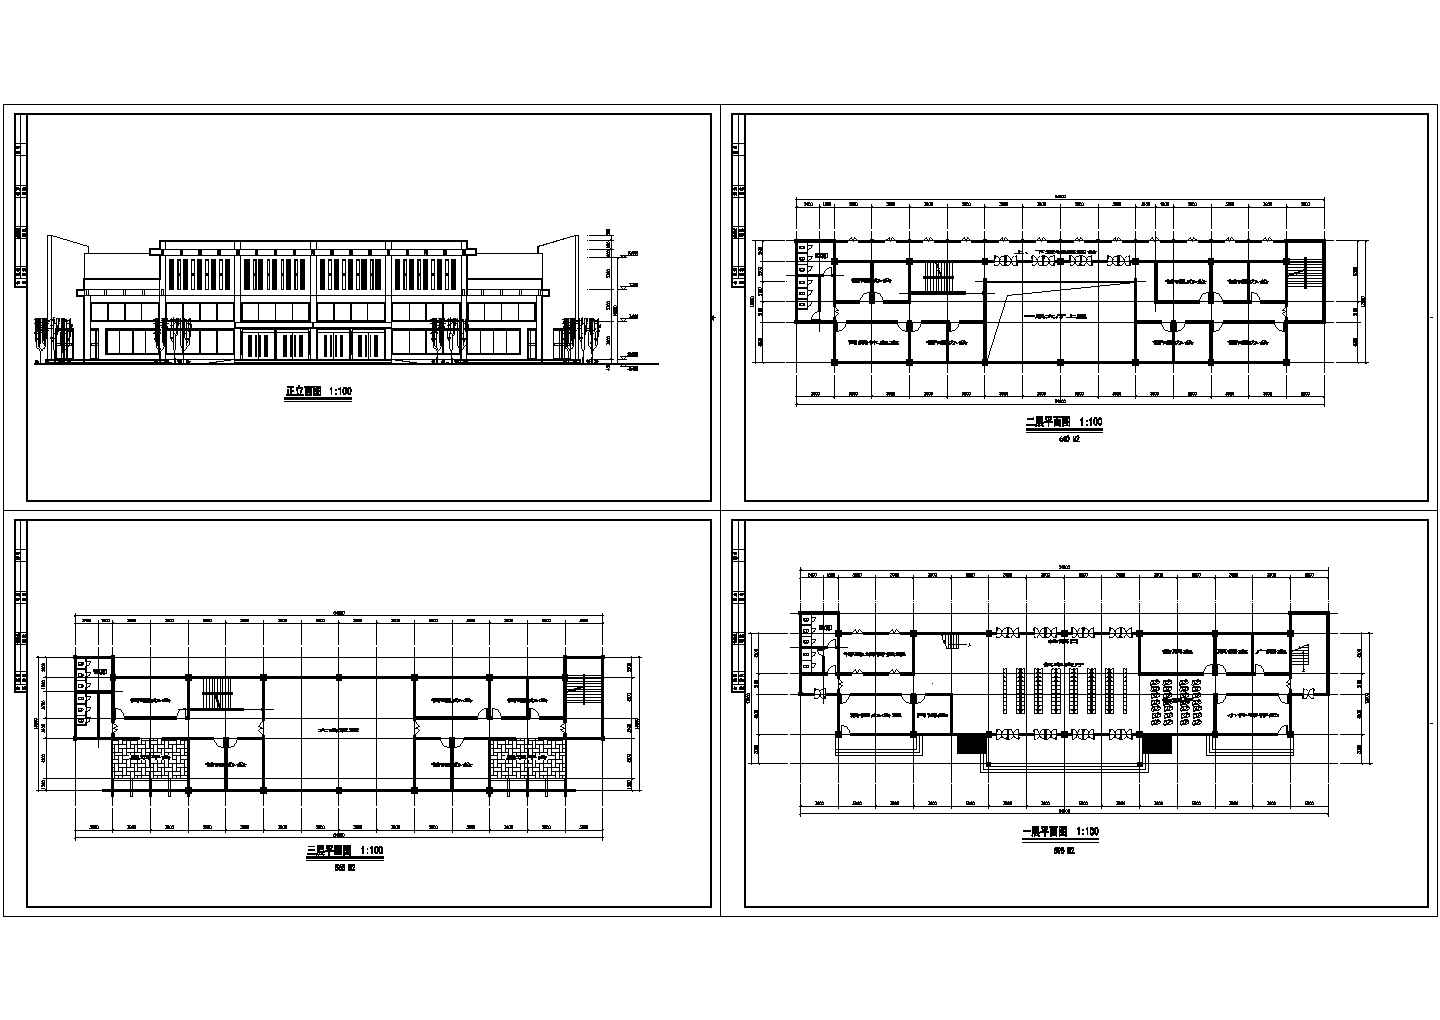 长54.6米 宽13.5米 3层1800平米汽车站建筑方案设计图